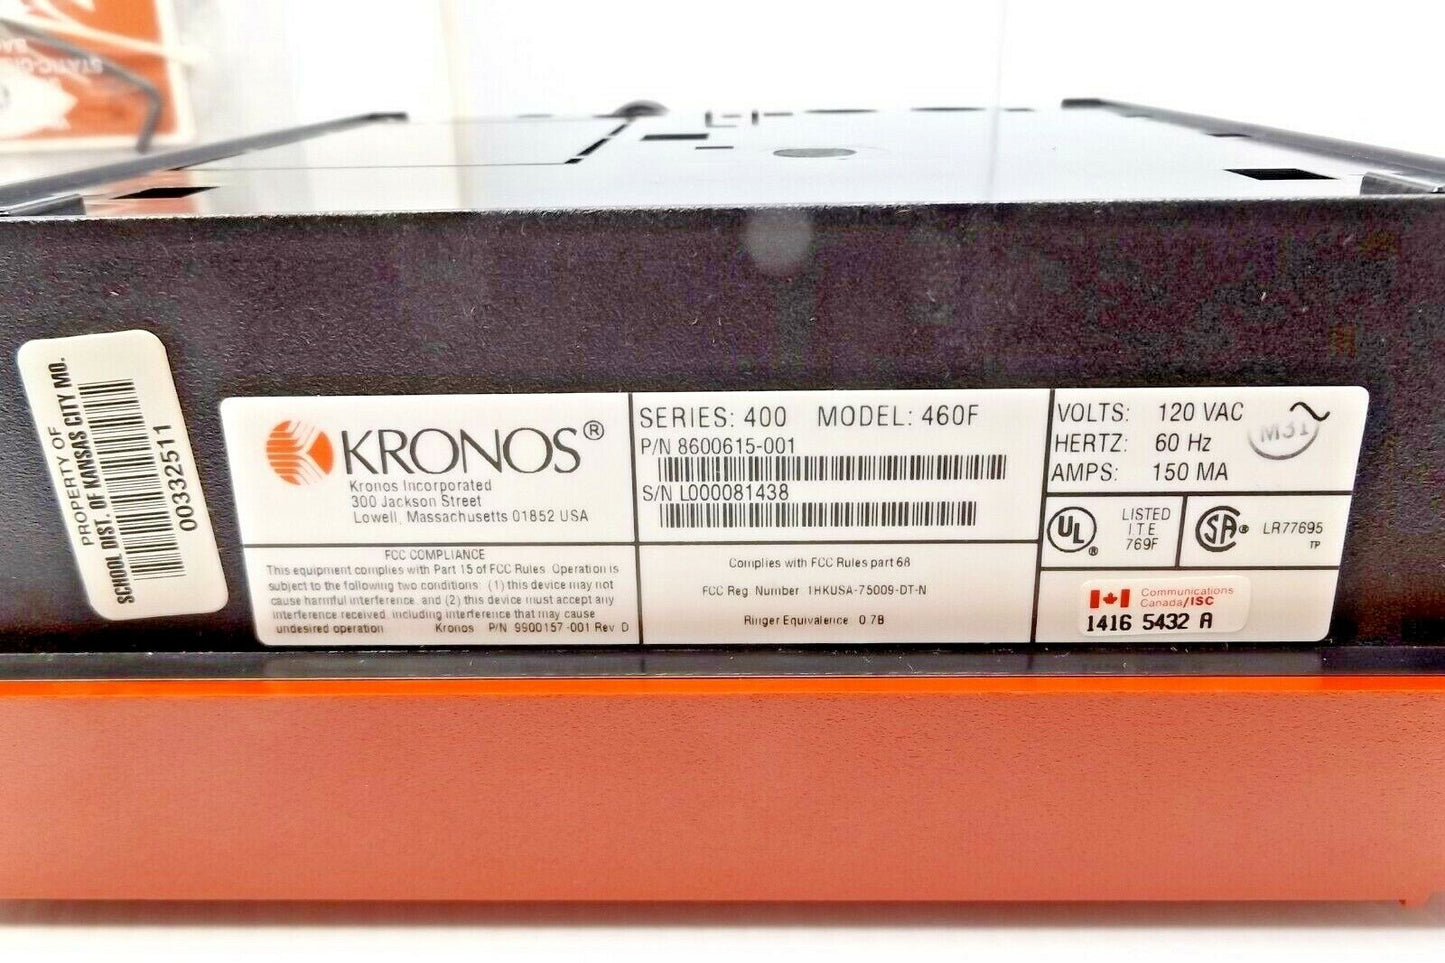 KRONOS 8600615-001 MODEL 460F SERIES 400 TIMEKEEPER